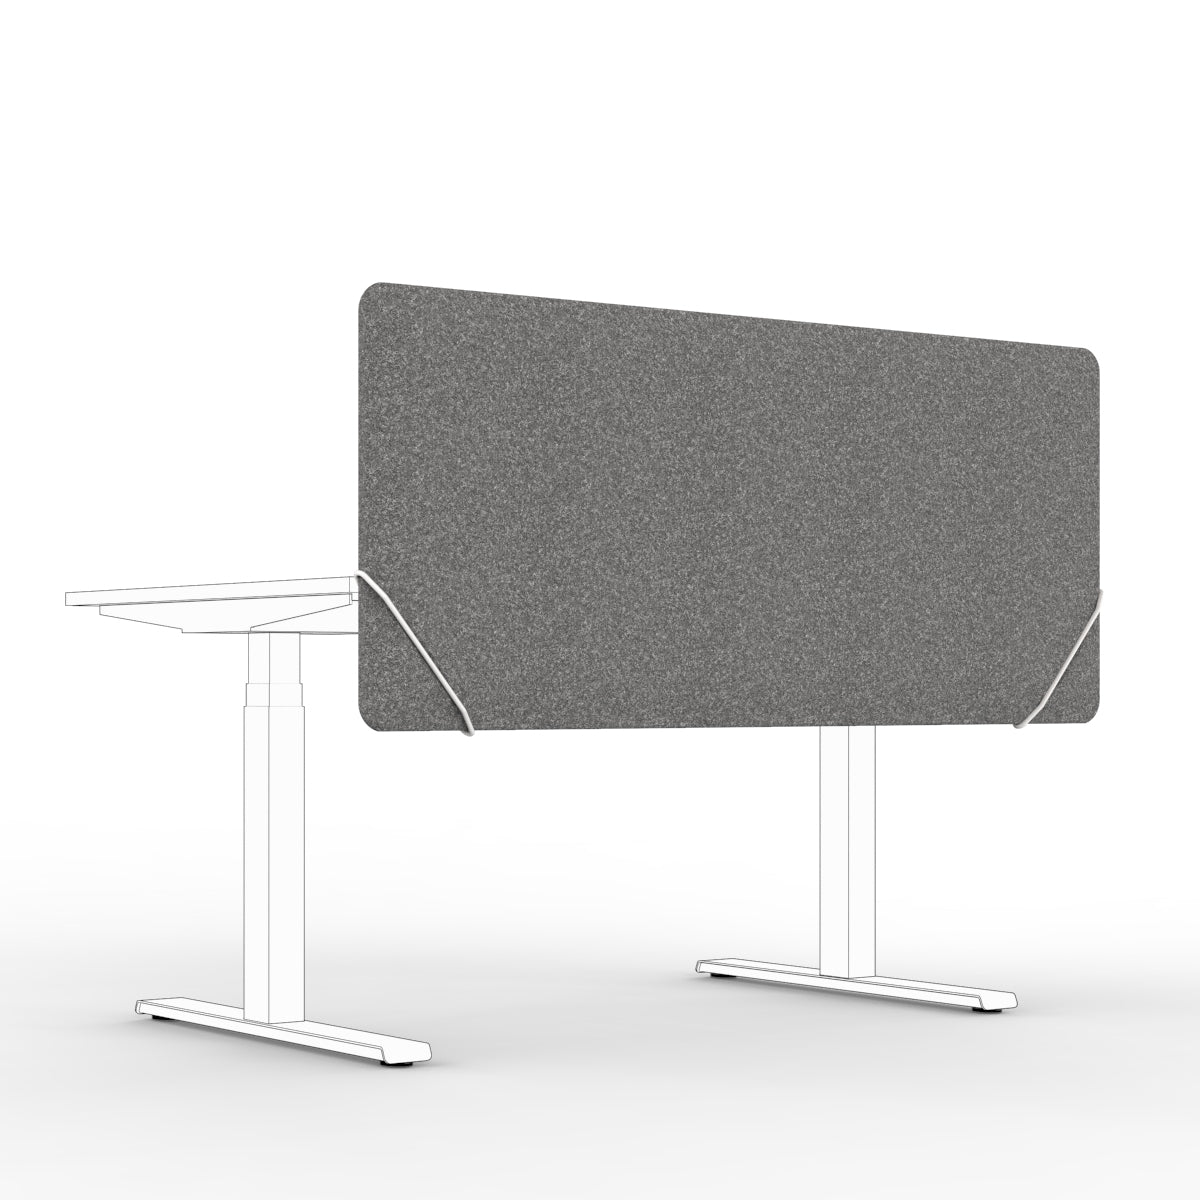 Sound absorbing table divider in dark grey felt with white slide on table mounts. Bordskjerm for skrivebord. Avskjerming og lyddemping på kontor